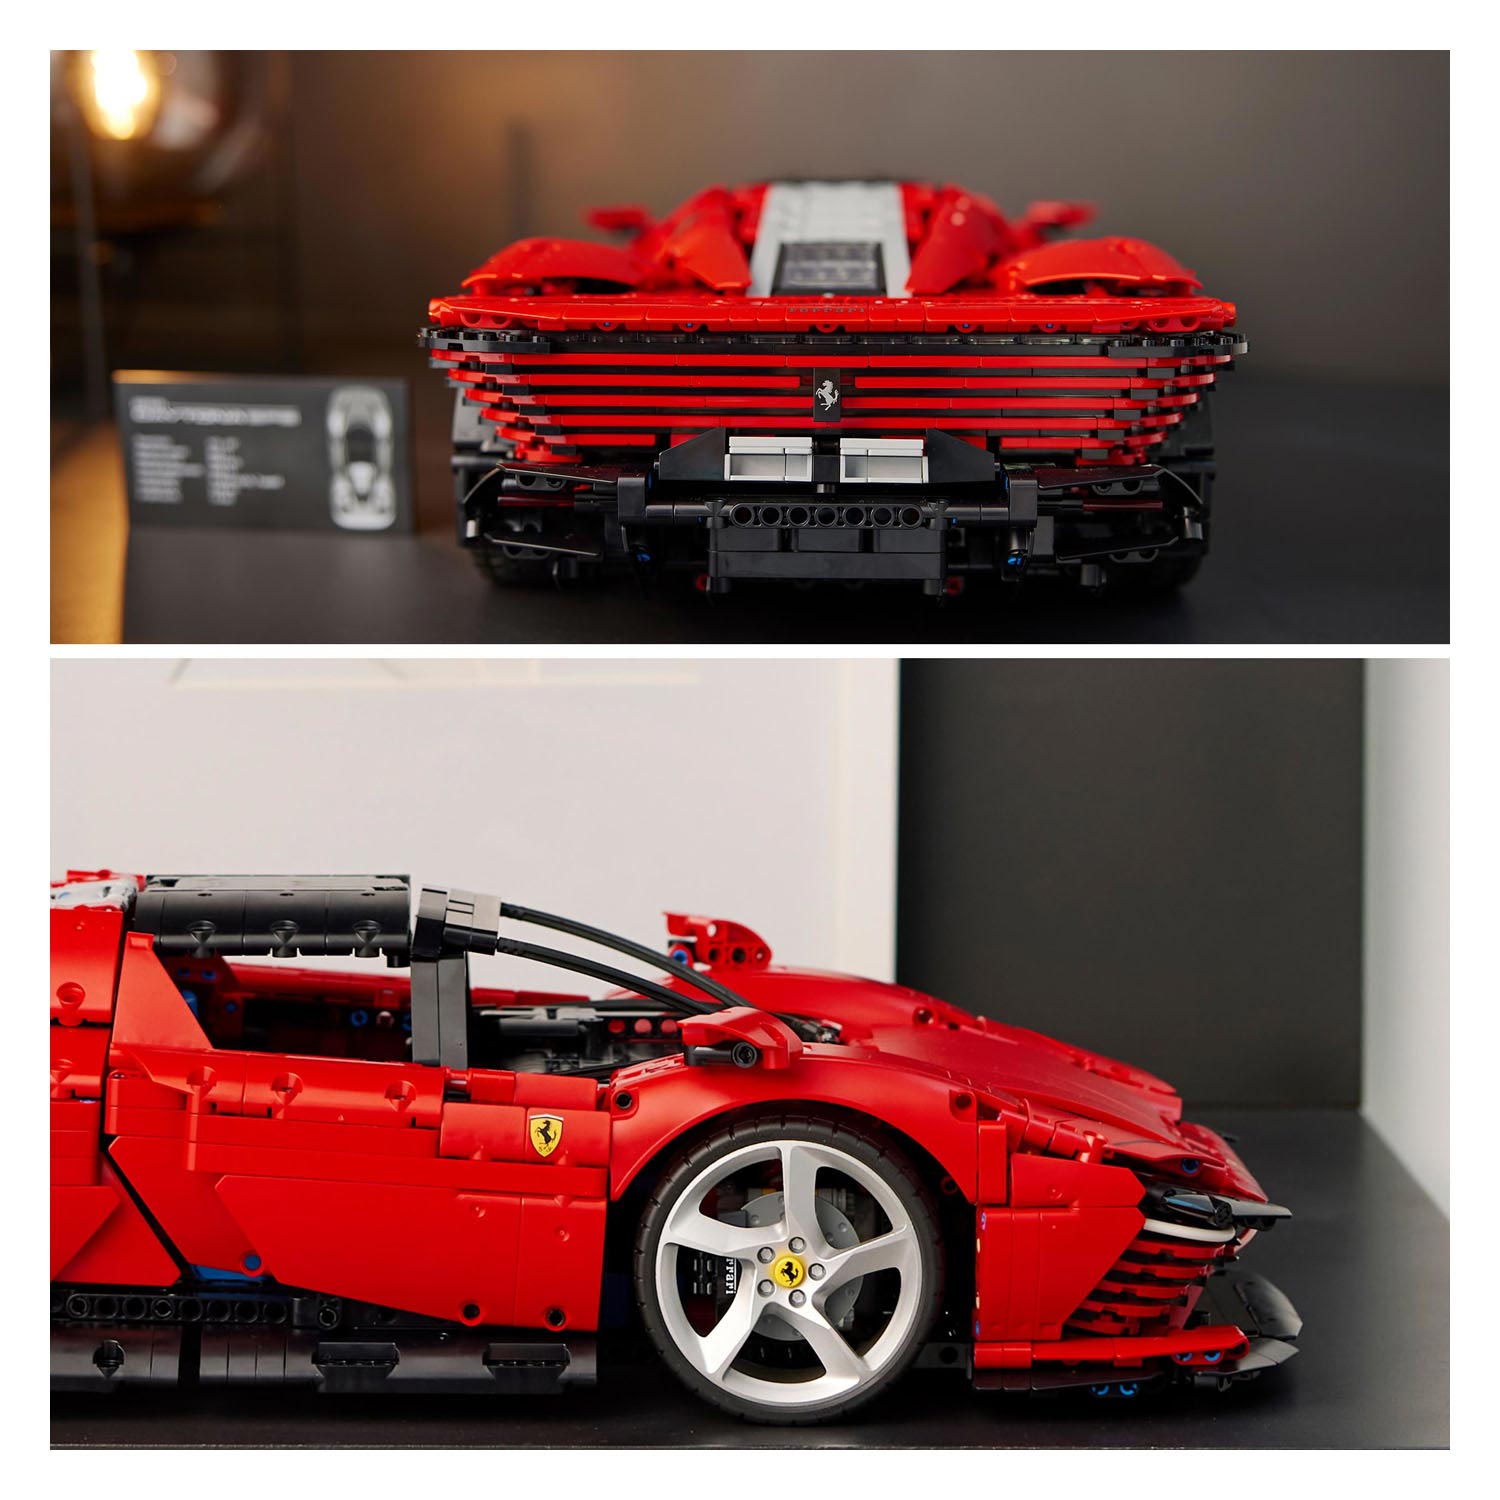 LEGO Technic 42143 La Ferrari Daytona SP3